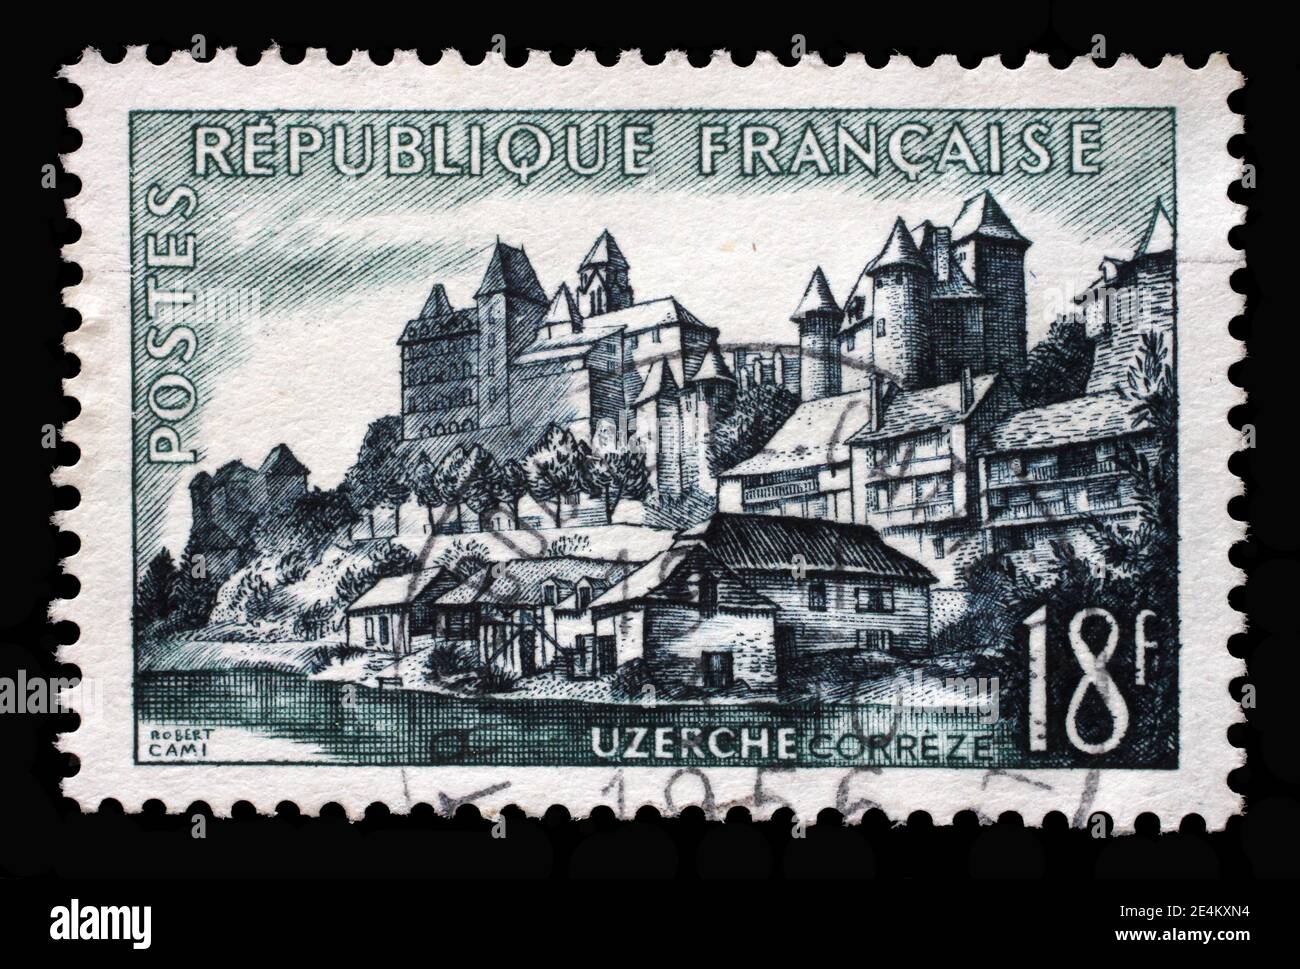 Timbre imprimé en France montre Uzerche, série Tourisme, vers 1955. Banque D'Images